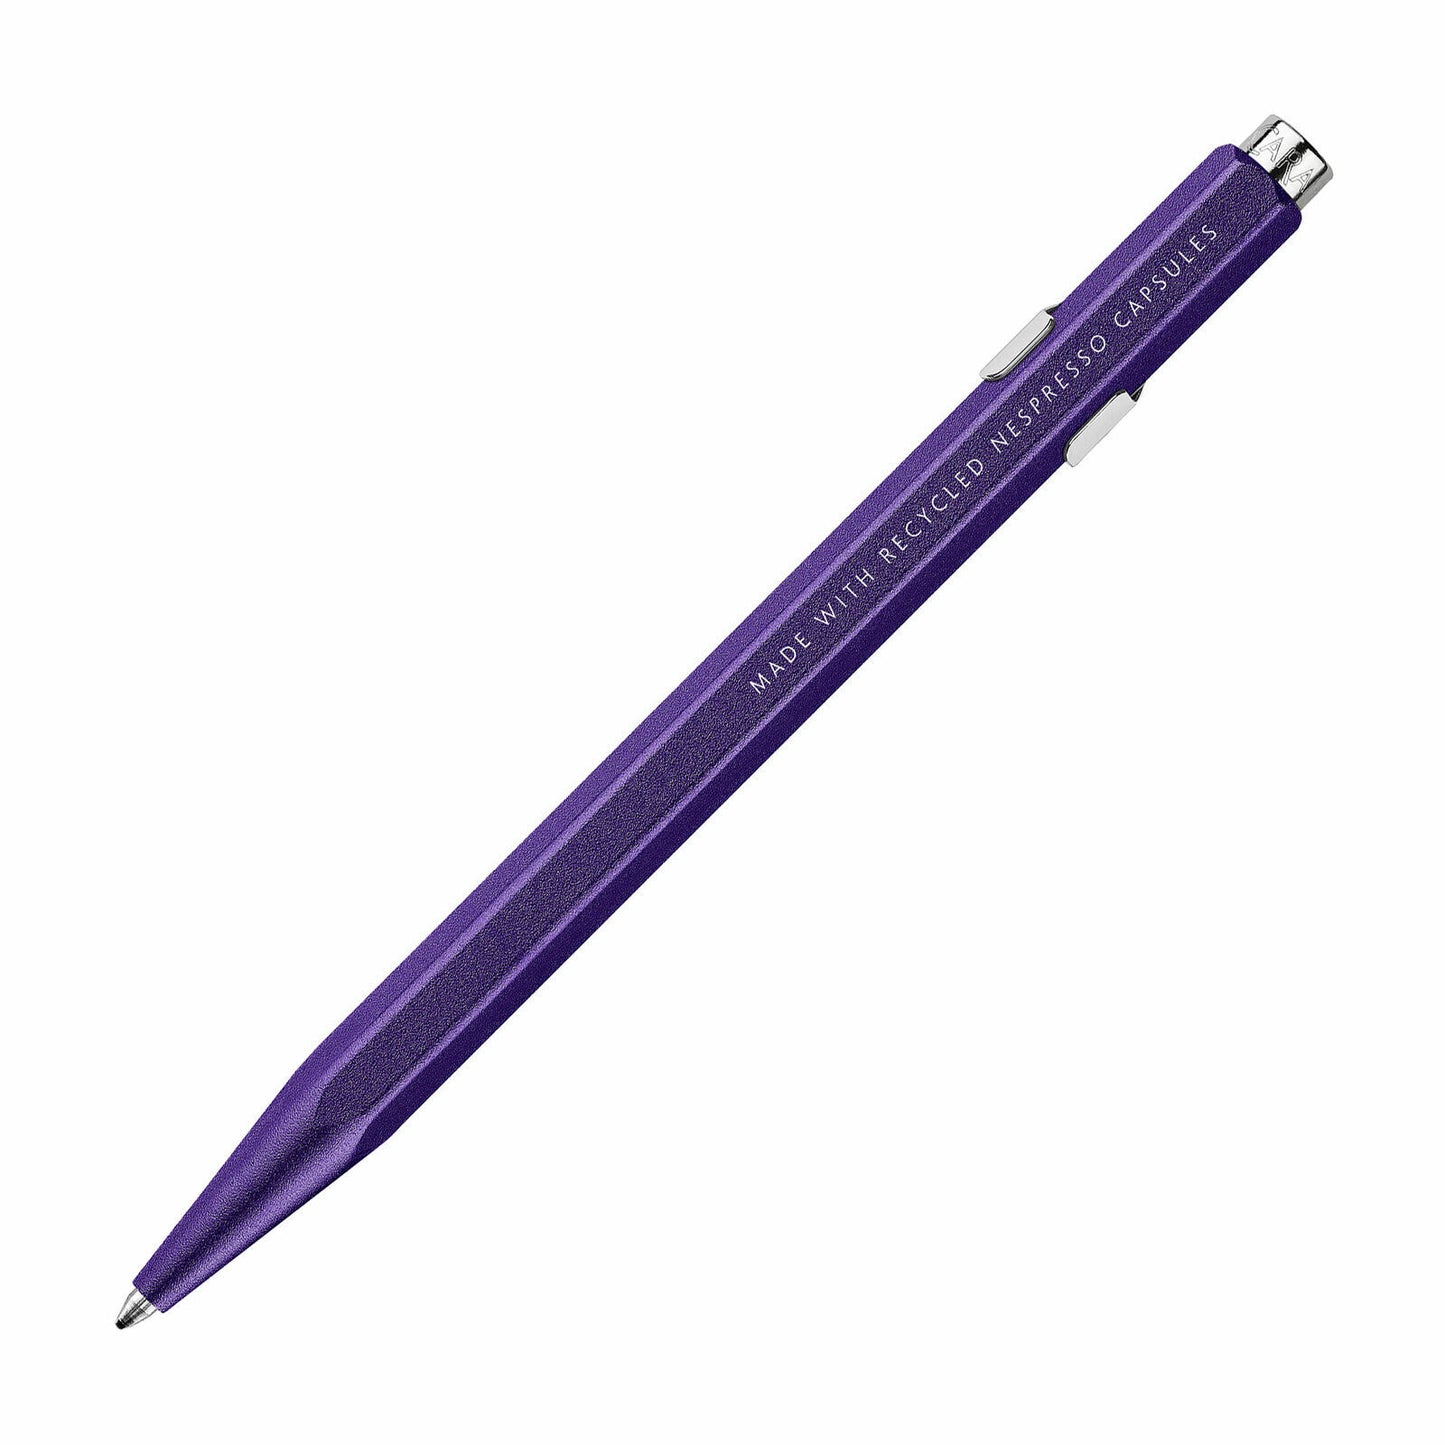 Caran d'Ache 849 Nespresso Ballpoint 2020 Pen in Purple Arpeggio NEW BOXED